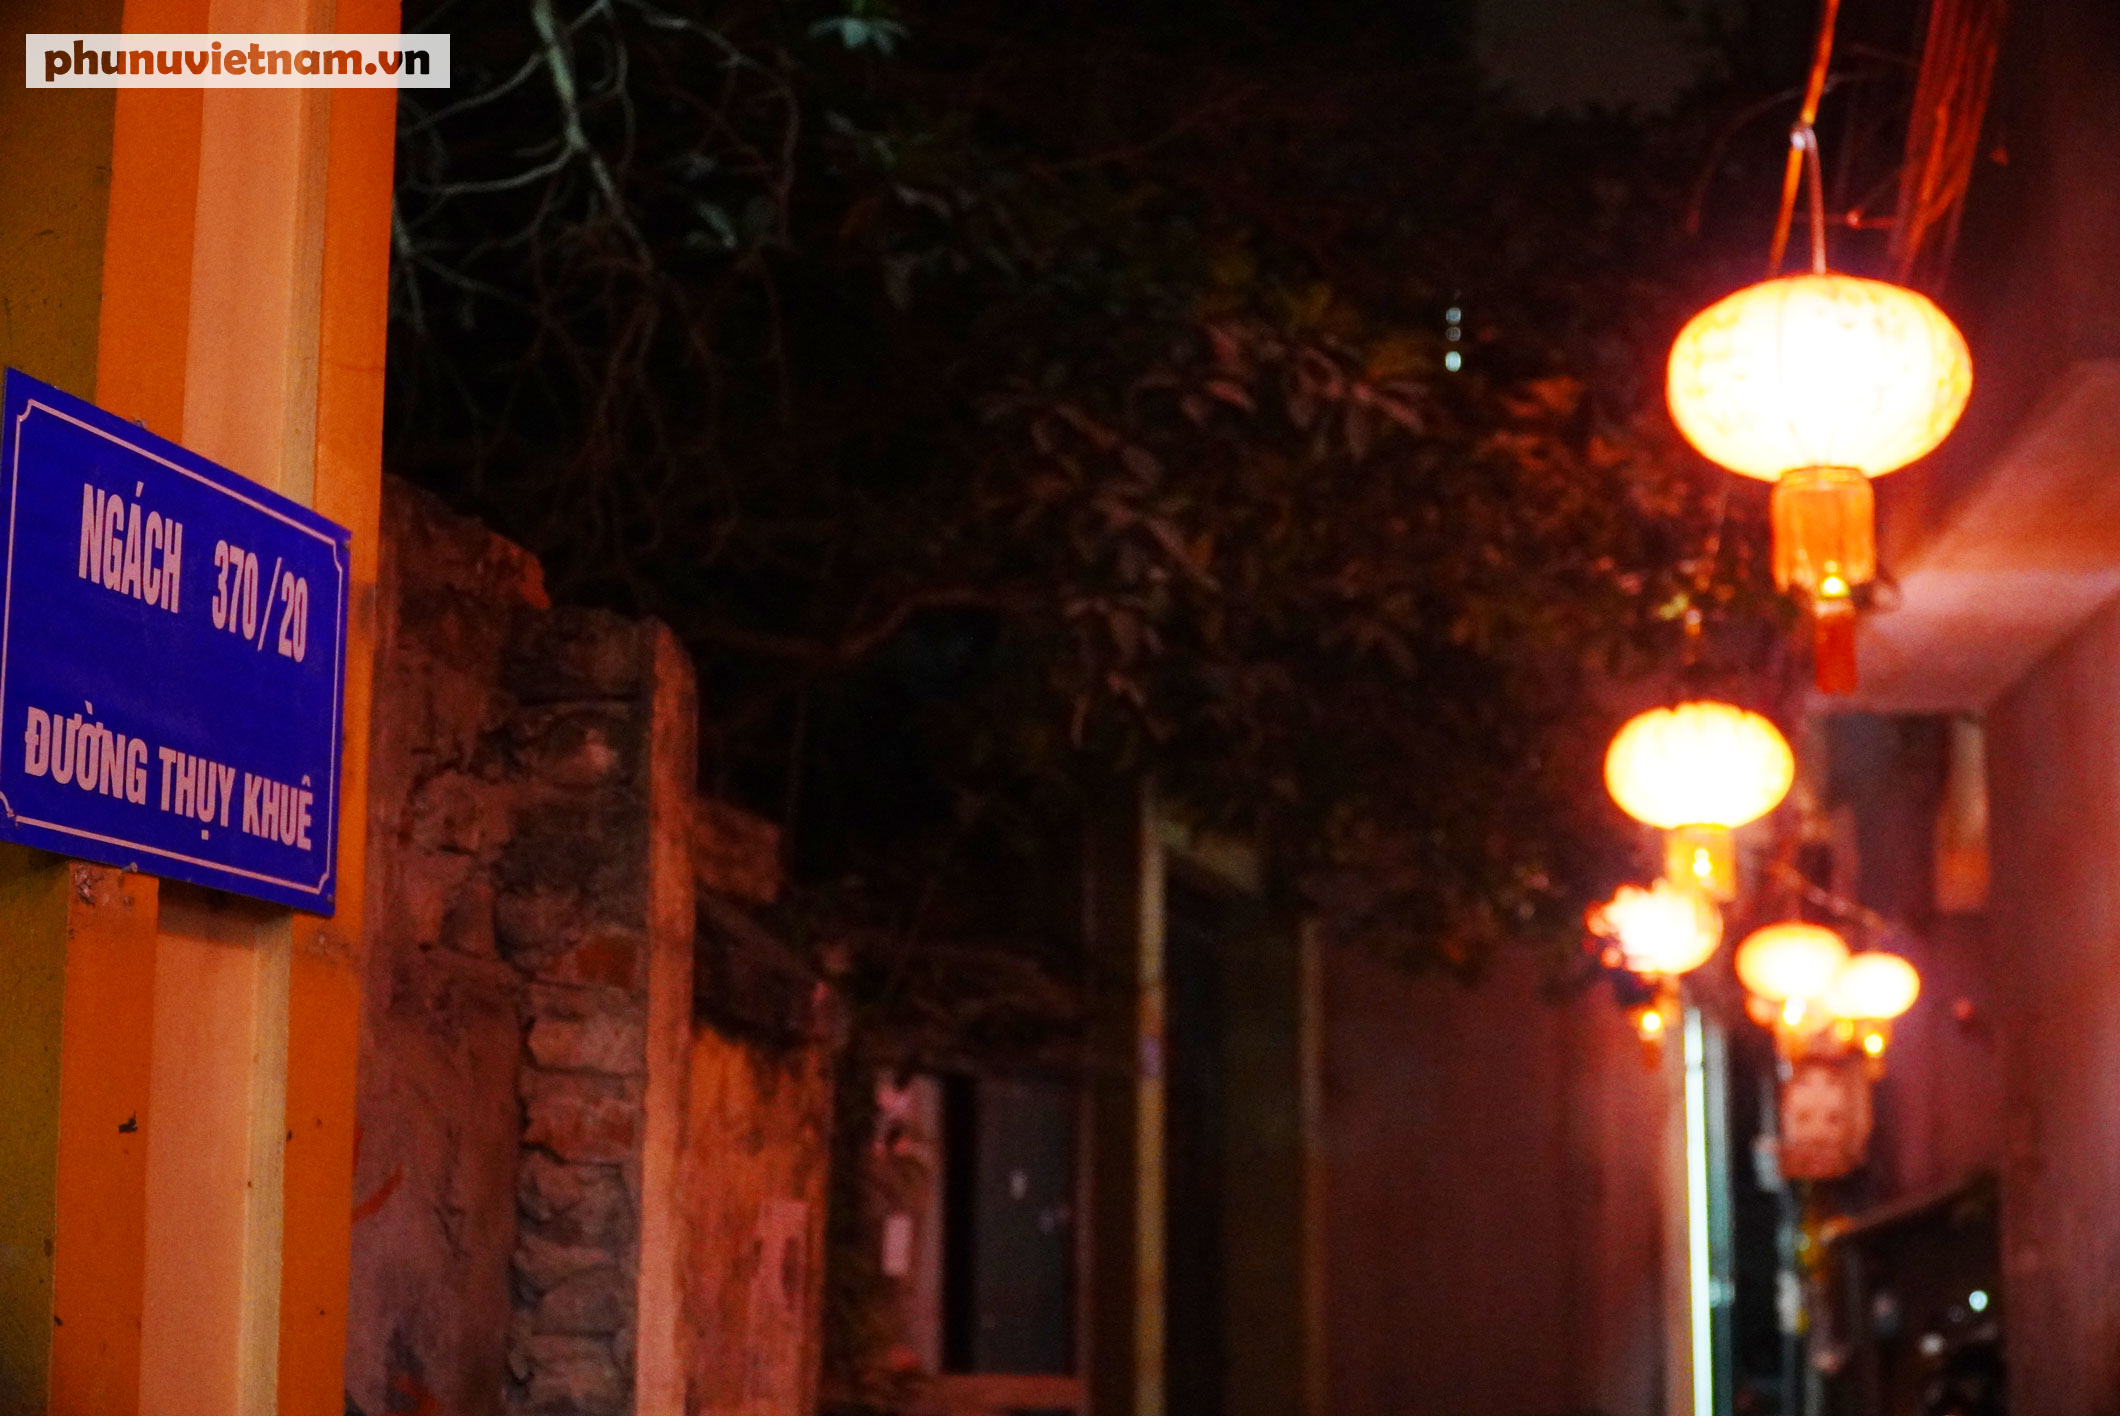 Hàng trăm đèn lồng đỏ lung linh trong ngõ nhỏ Hà Nội - Ảnh 14.